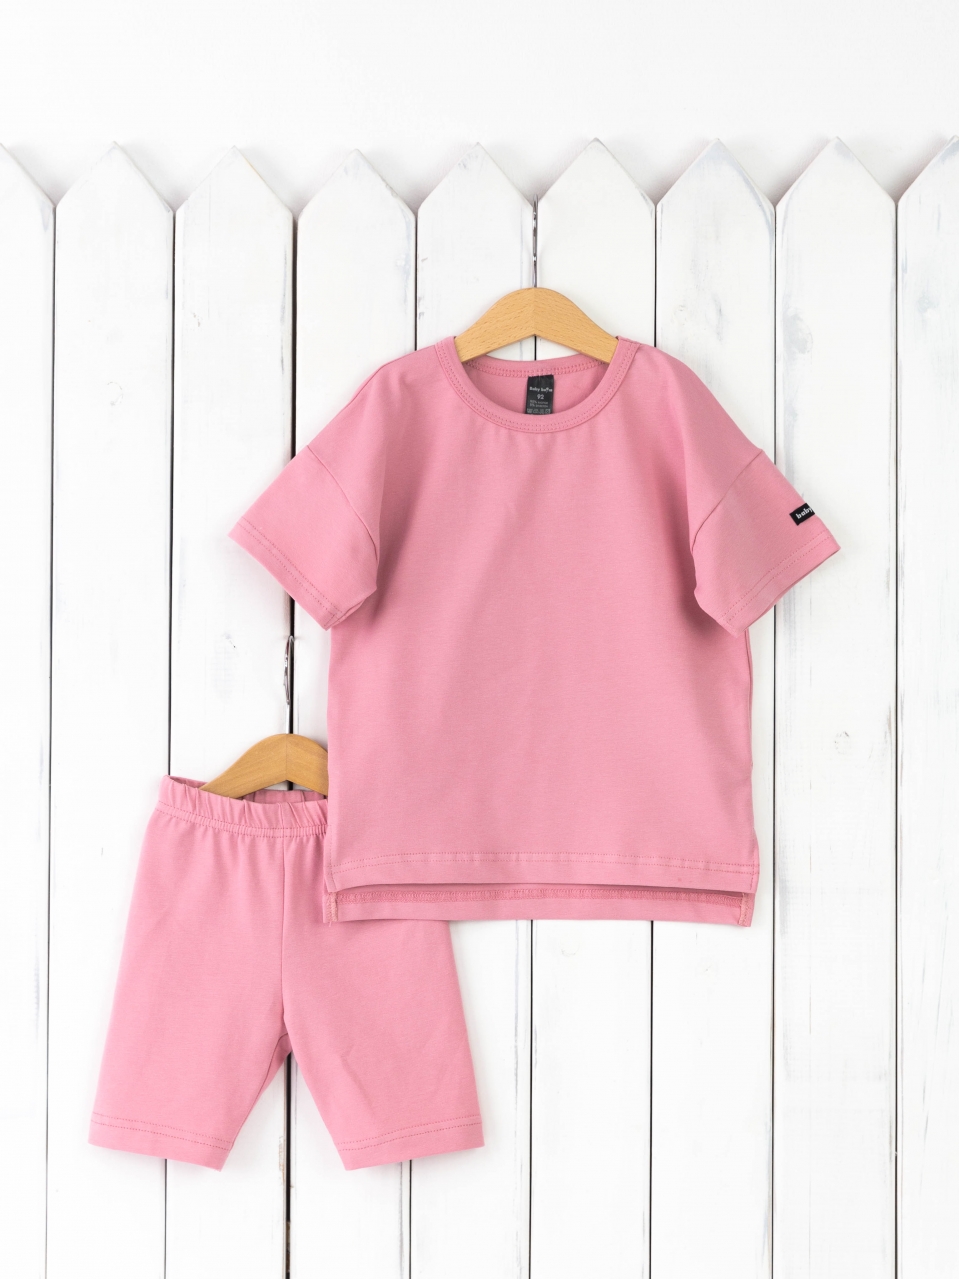 КД416/9-К Комплект детский р.116 футболка+легинсы/розовый зефир Бэби Бум - Саранск 